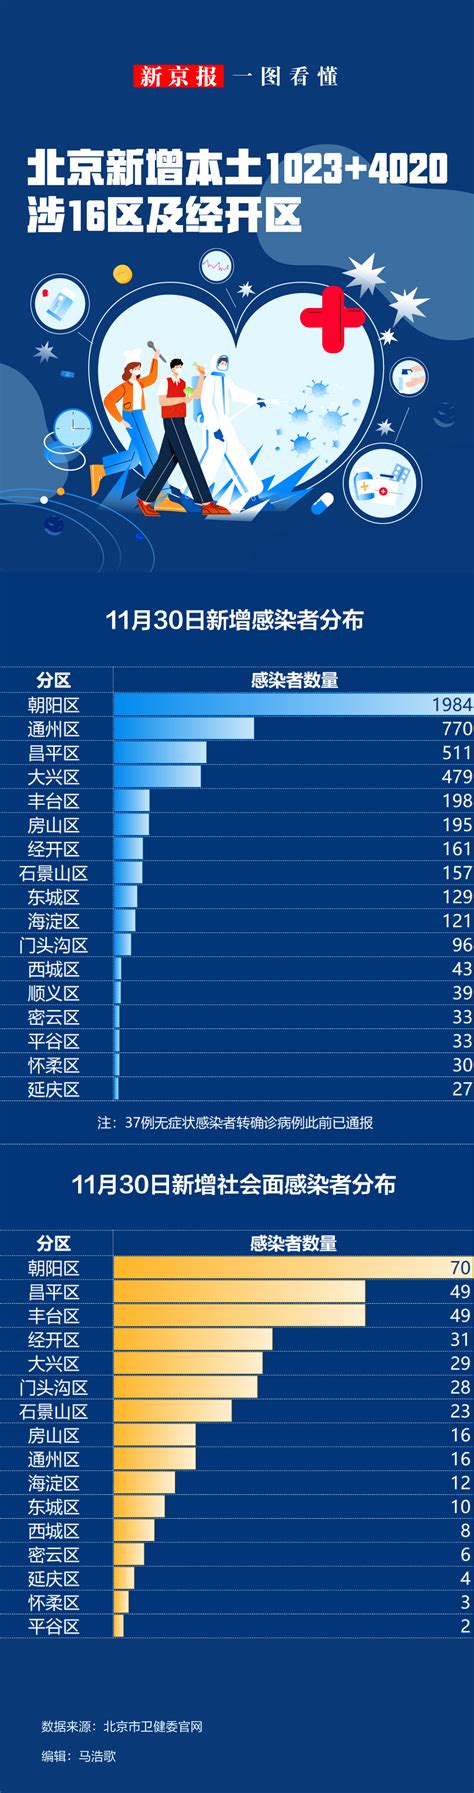 优享资讯 | 一图看懂北京11月30日新增本土感染者“1023+4020”